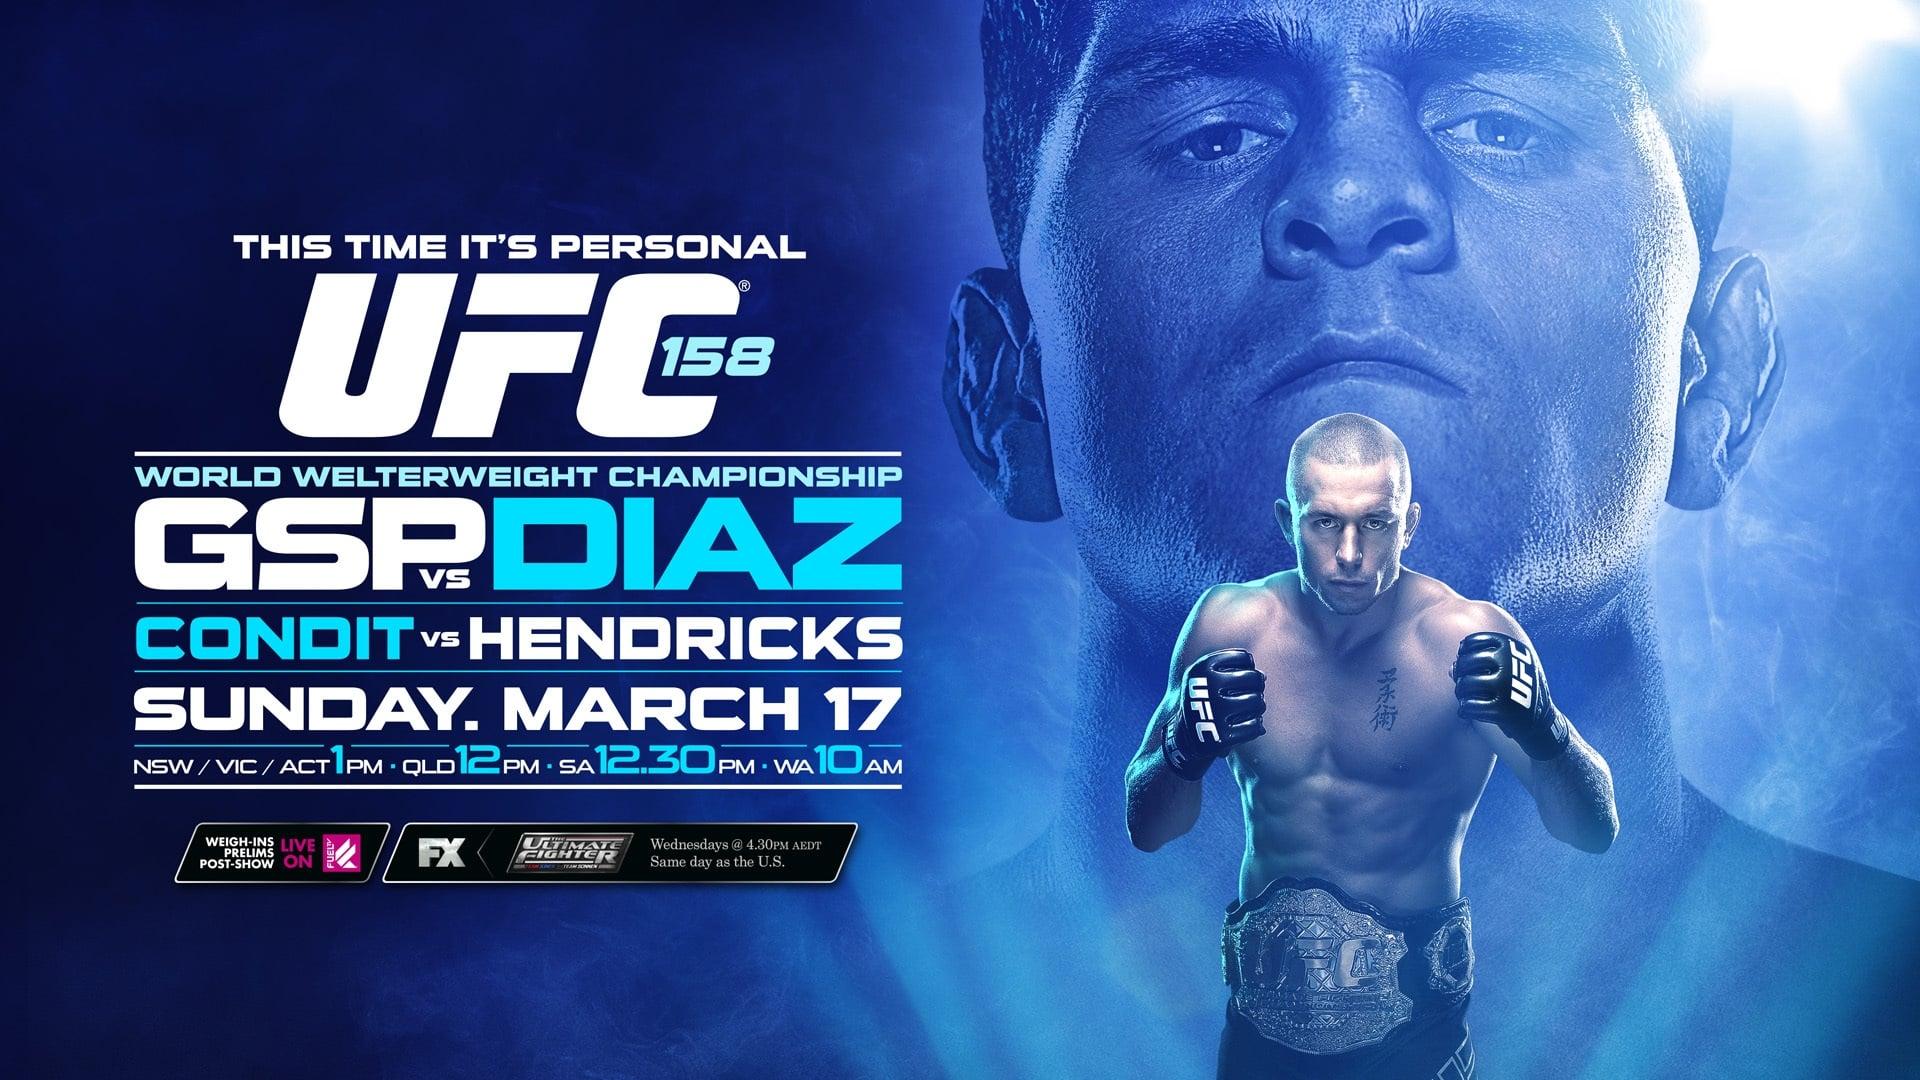 UFC 158: St-Pierre vs. Diaz backdrop